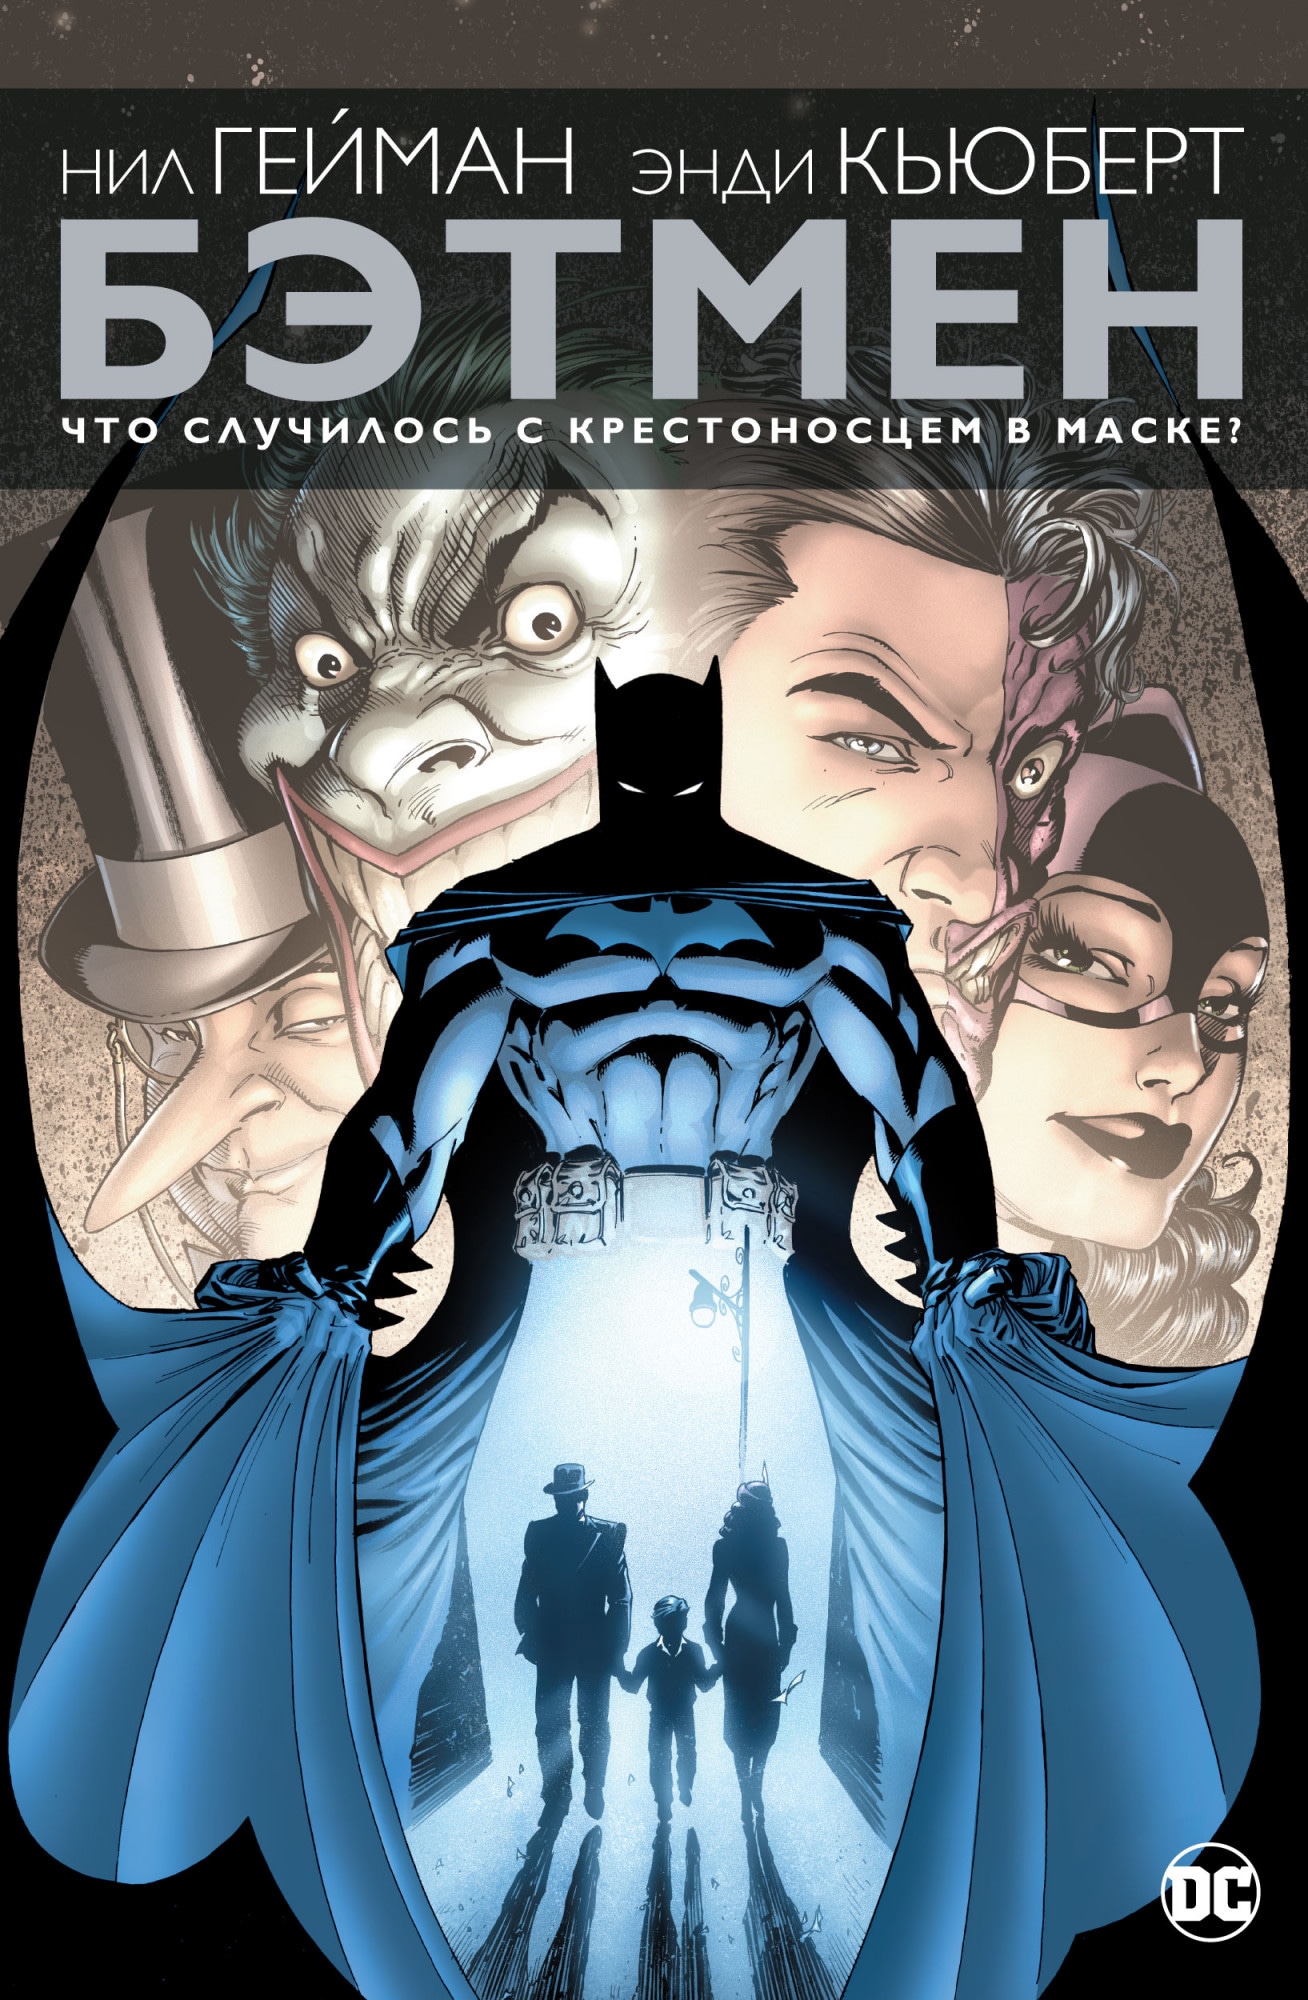 Book “Бэтмен. Что случилось с Крестоносцем в Маске?” by Нил Гейман — 2021